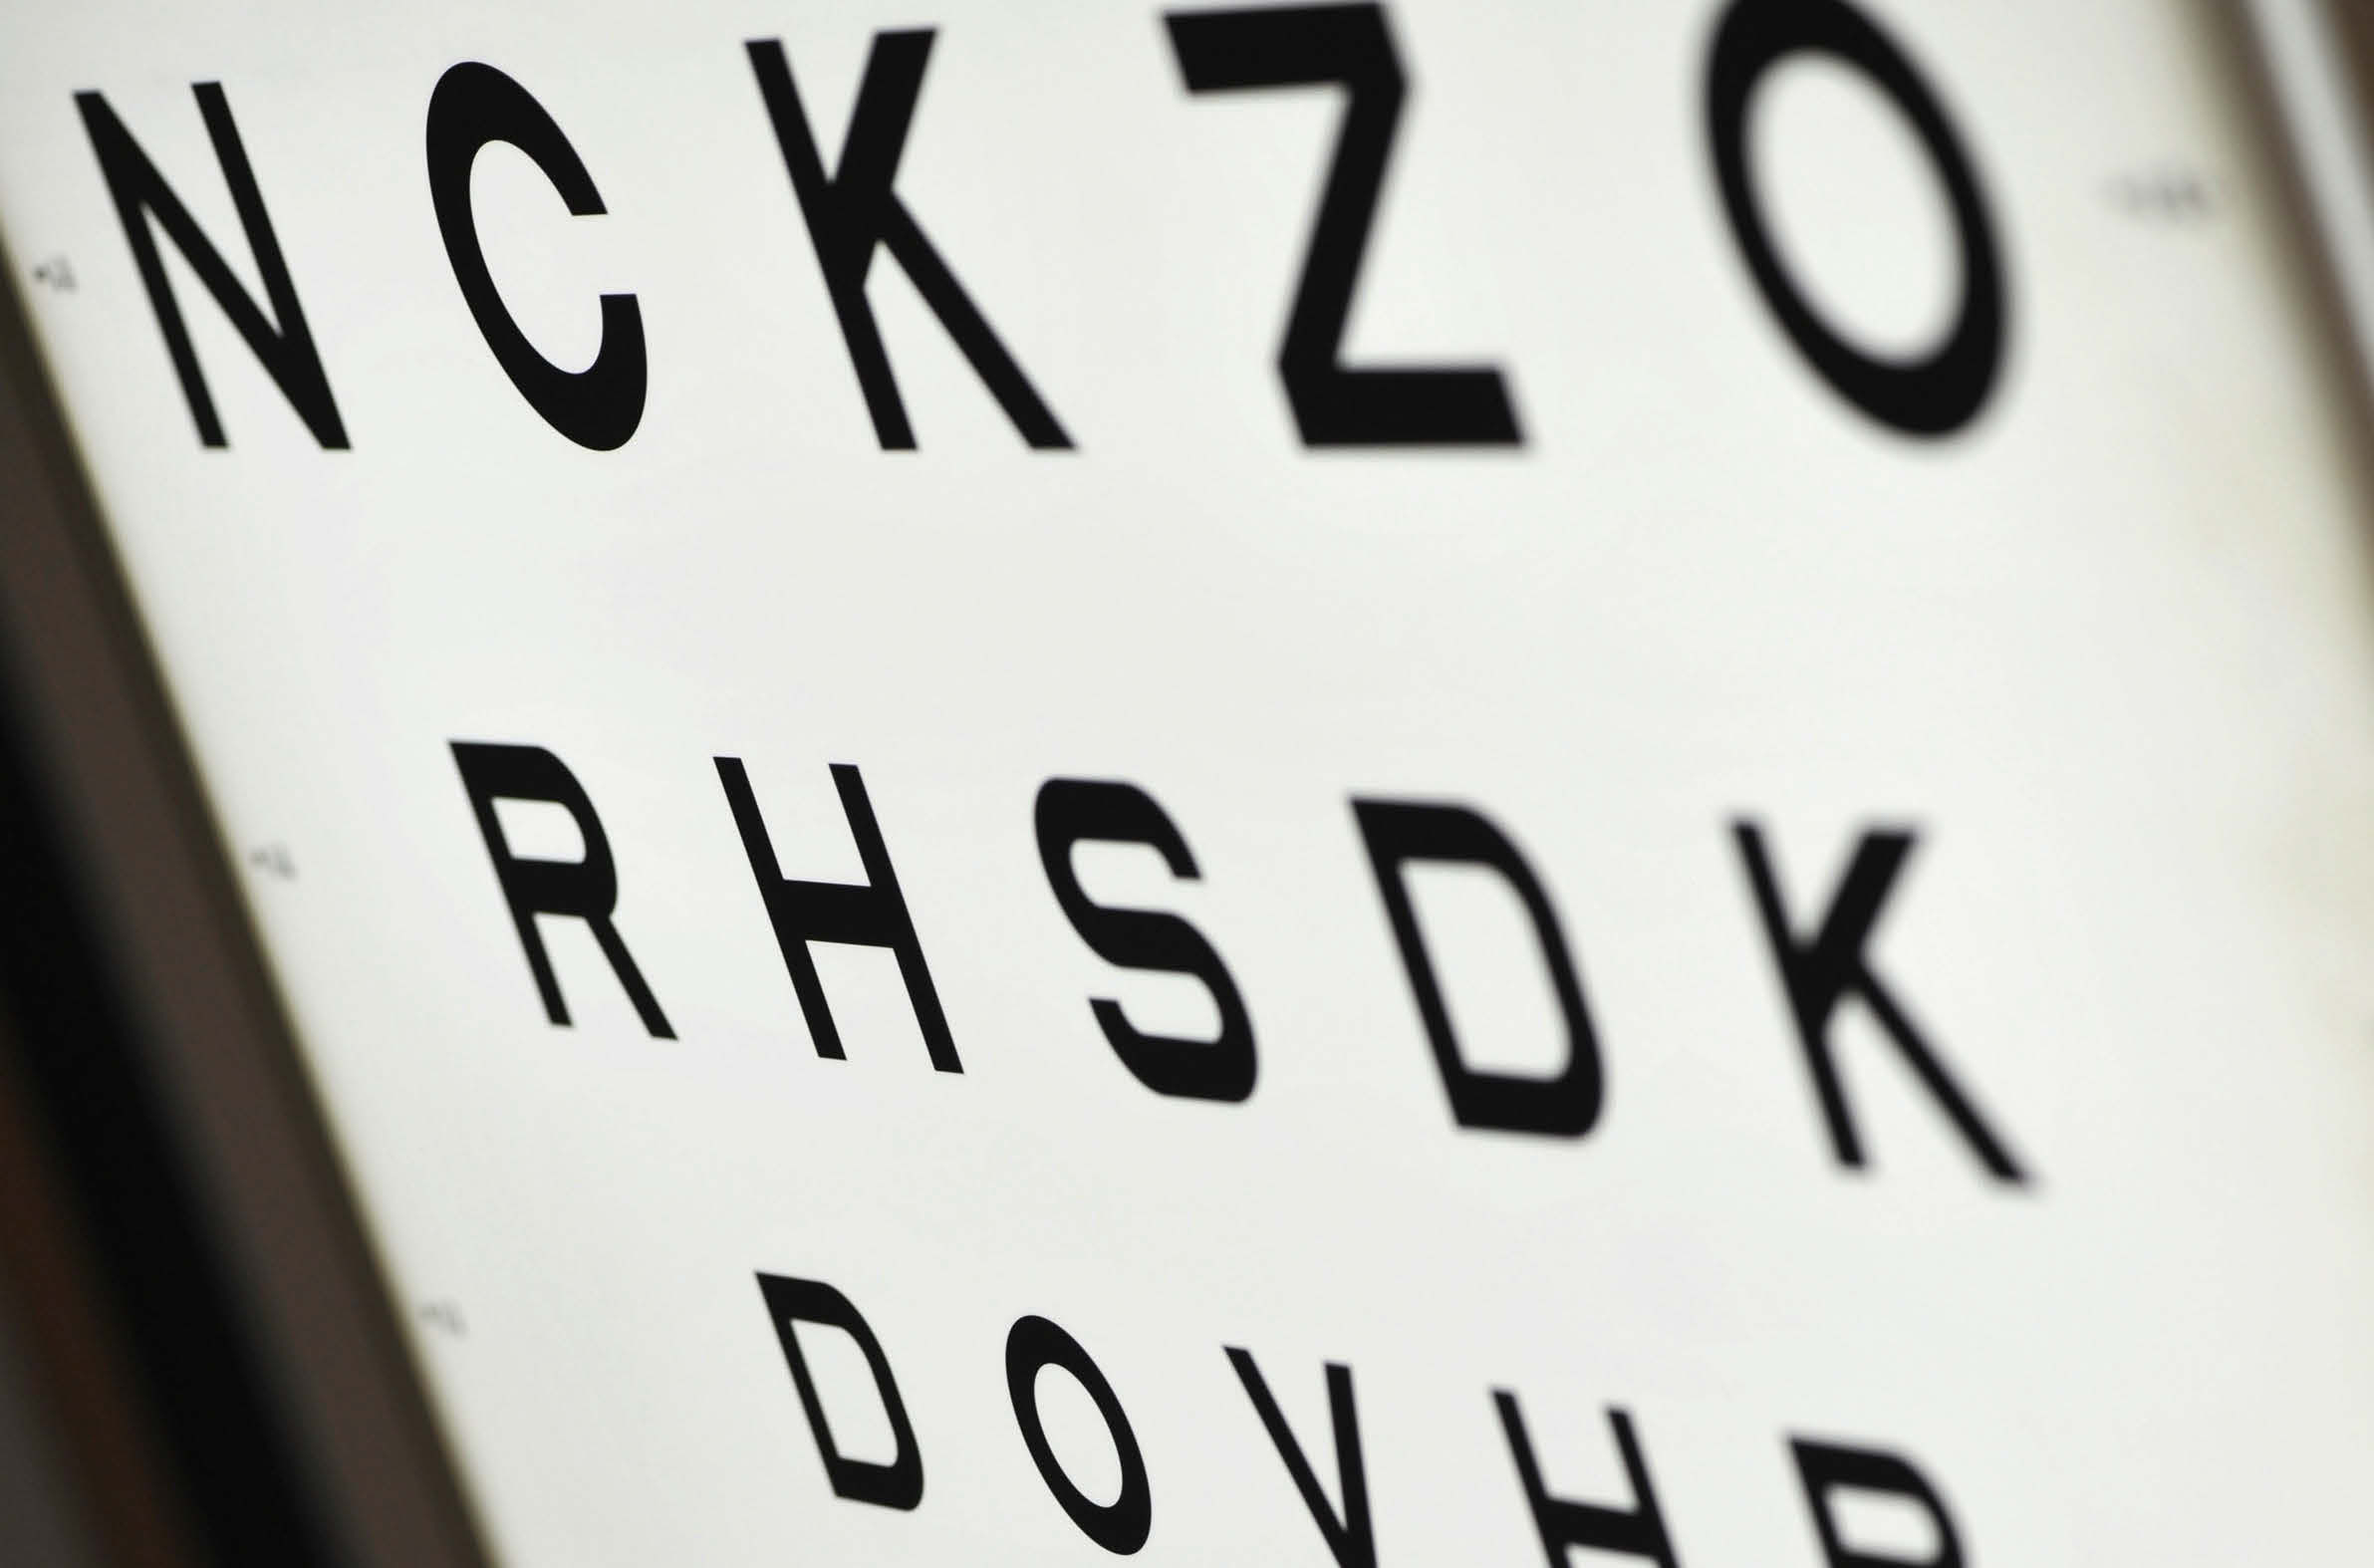 Göz doktorunda muayene Tedbir almak buna değer: Göz doktoru (oftalmolog) çeşitli muayene yöntemleri yardımıyla retinanın ortasındaki (maküla) hastalıklı değişimleri, henüz hasta gözünde bozukluk